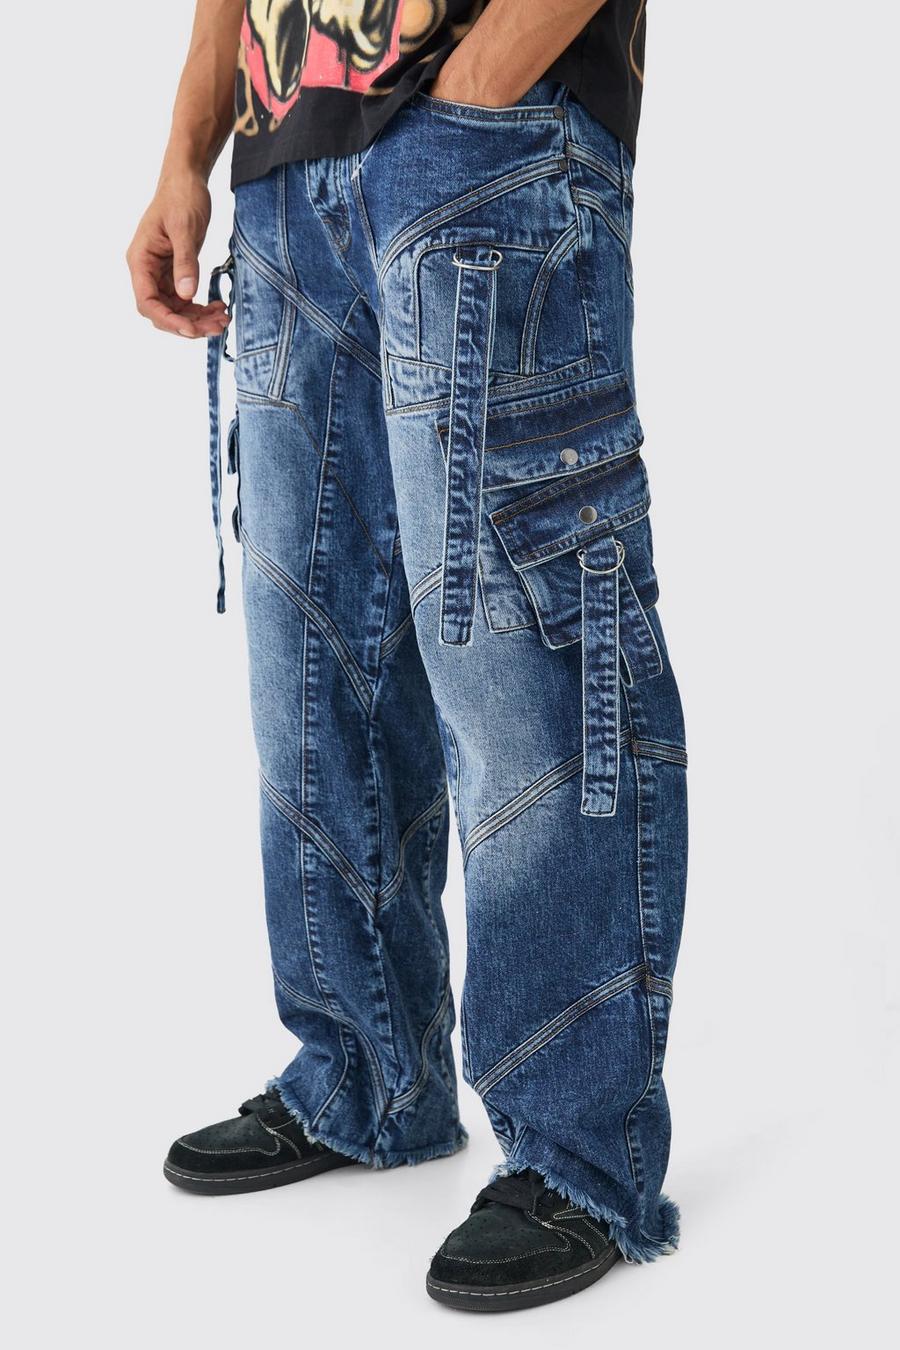 Lockere Jeans mit Indigo-Waschung und Schnallen-Detail